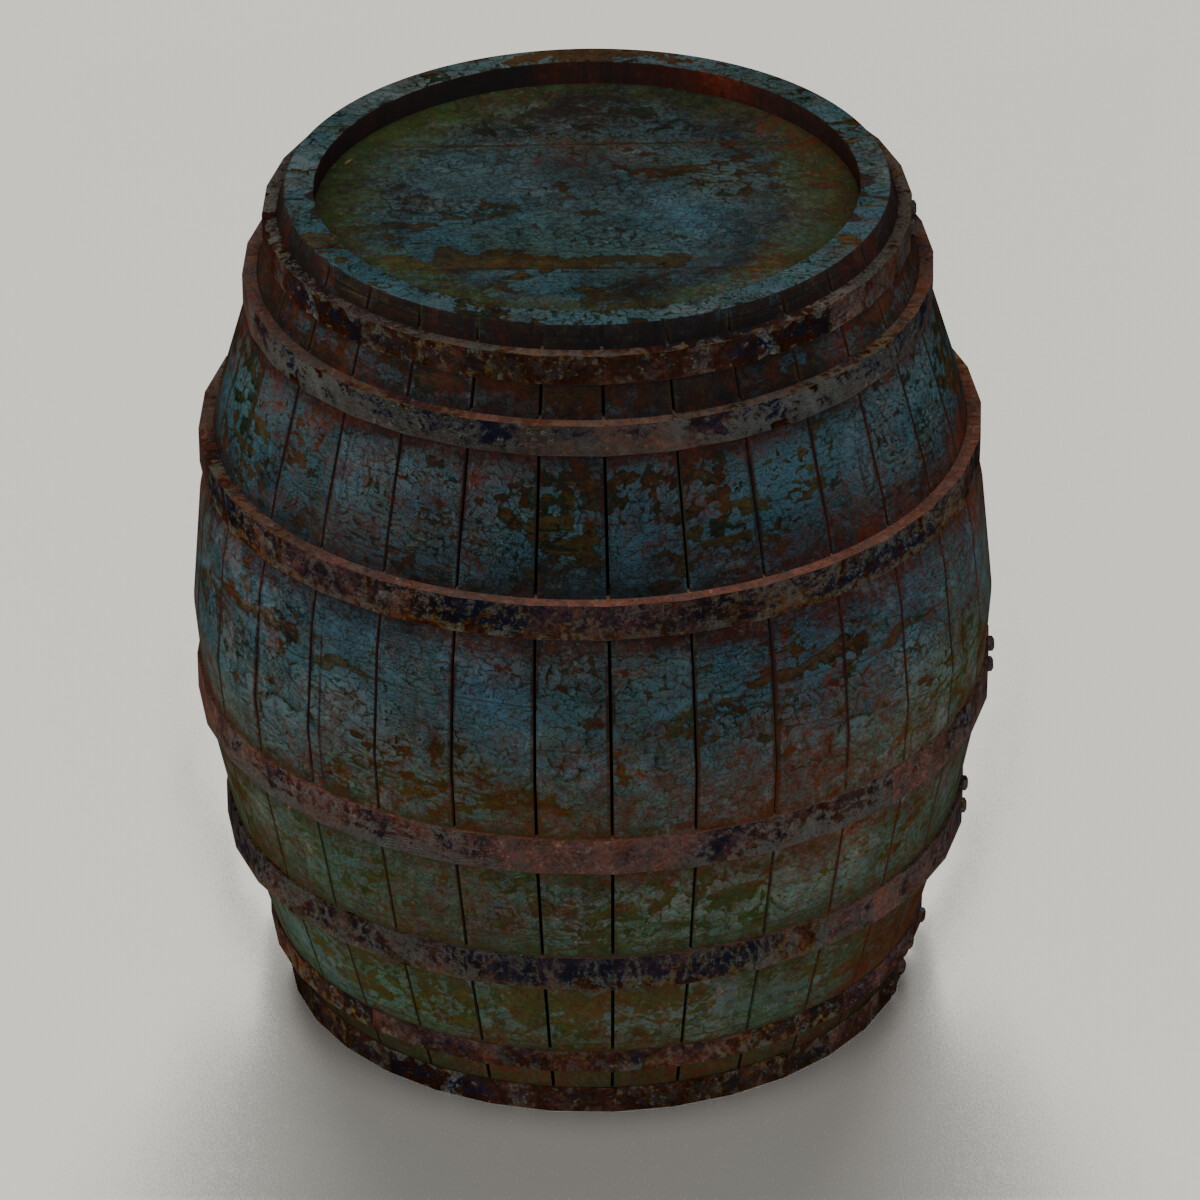 Instant barrel rust фото 82